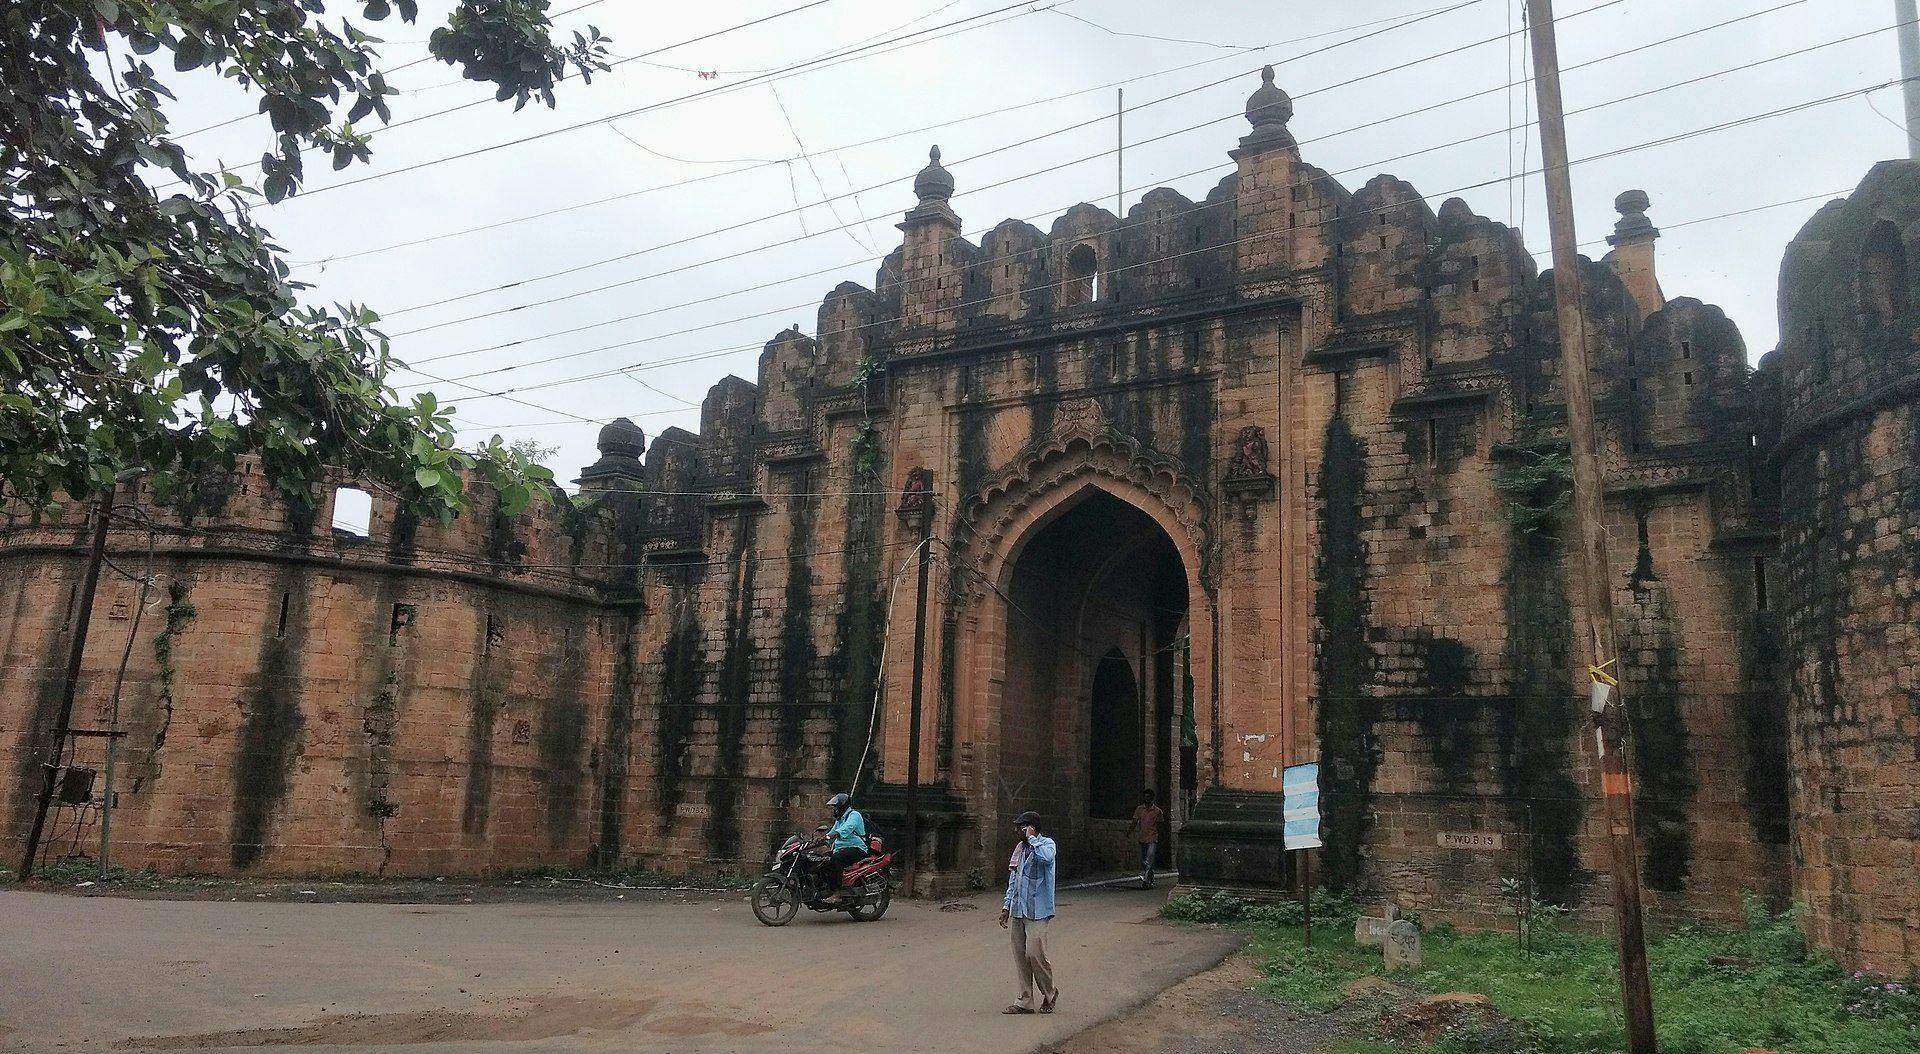 Chandrapur Fort